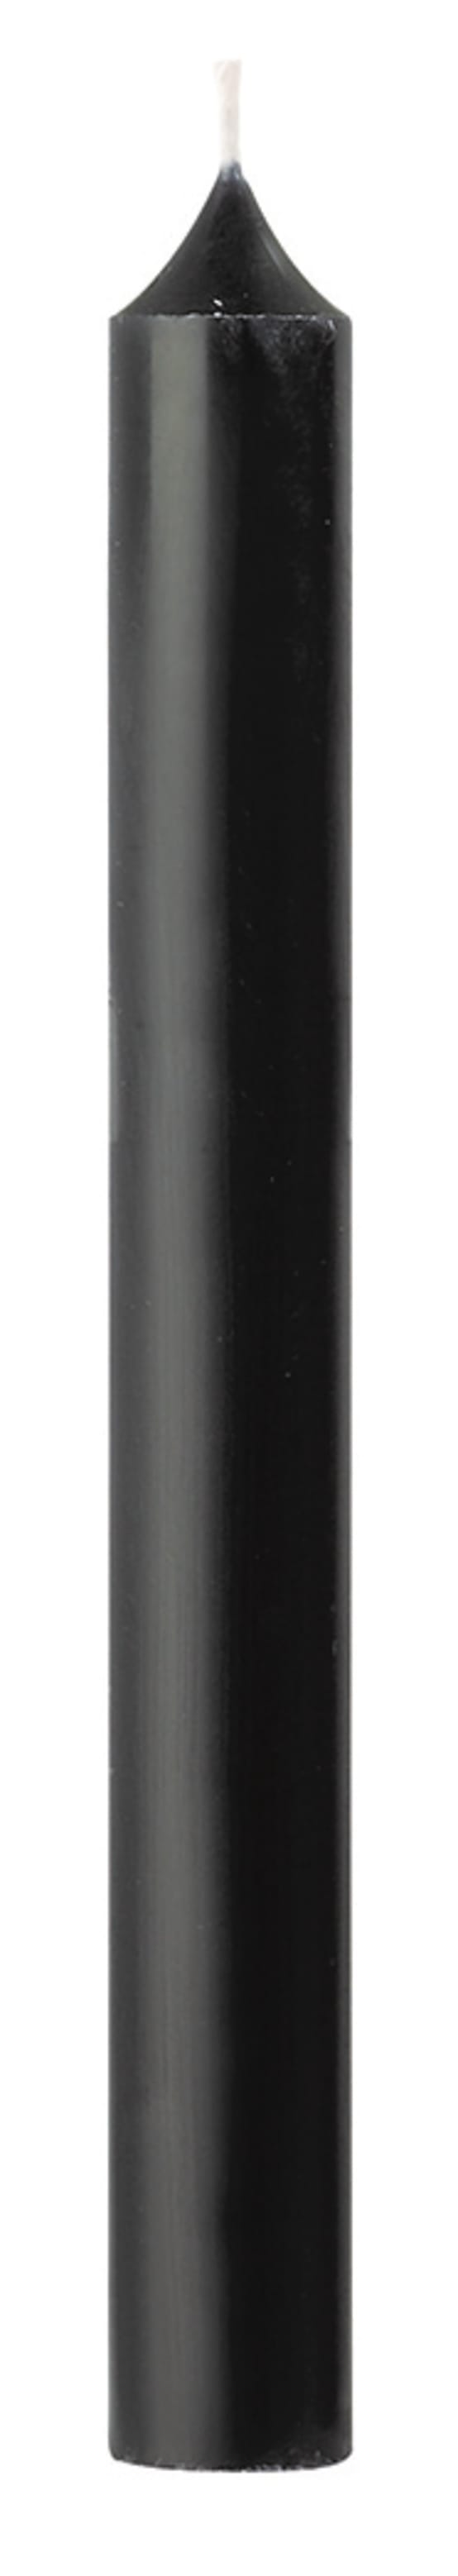 Bougie Noire, Flambeau de 30 cm, x 2 - Aux Feux de la Fête - Paris